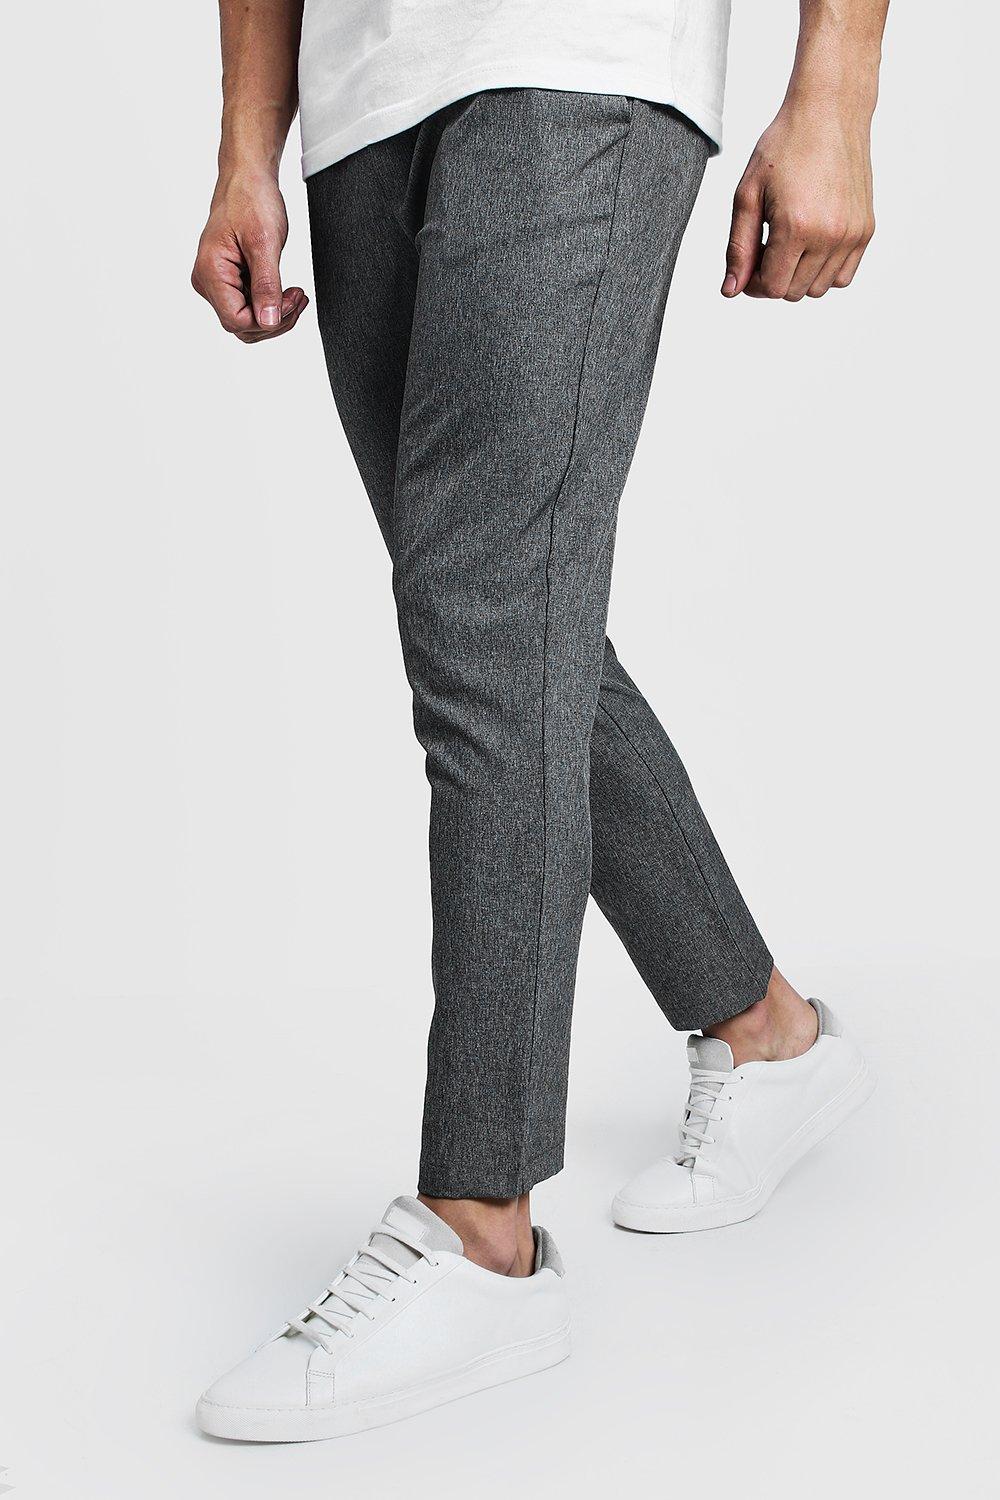 Pantalon habillé homme gris